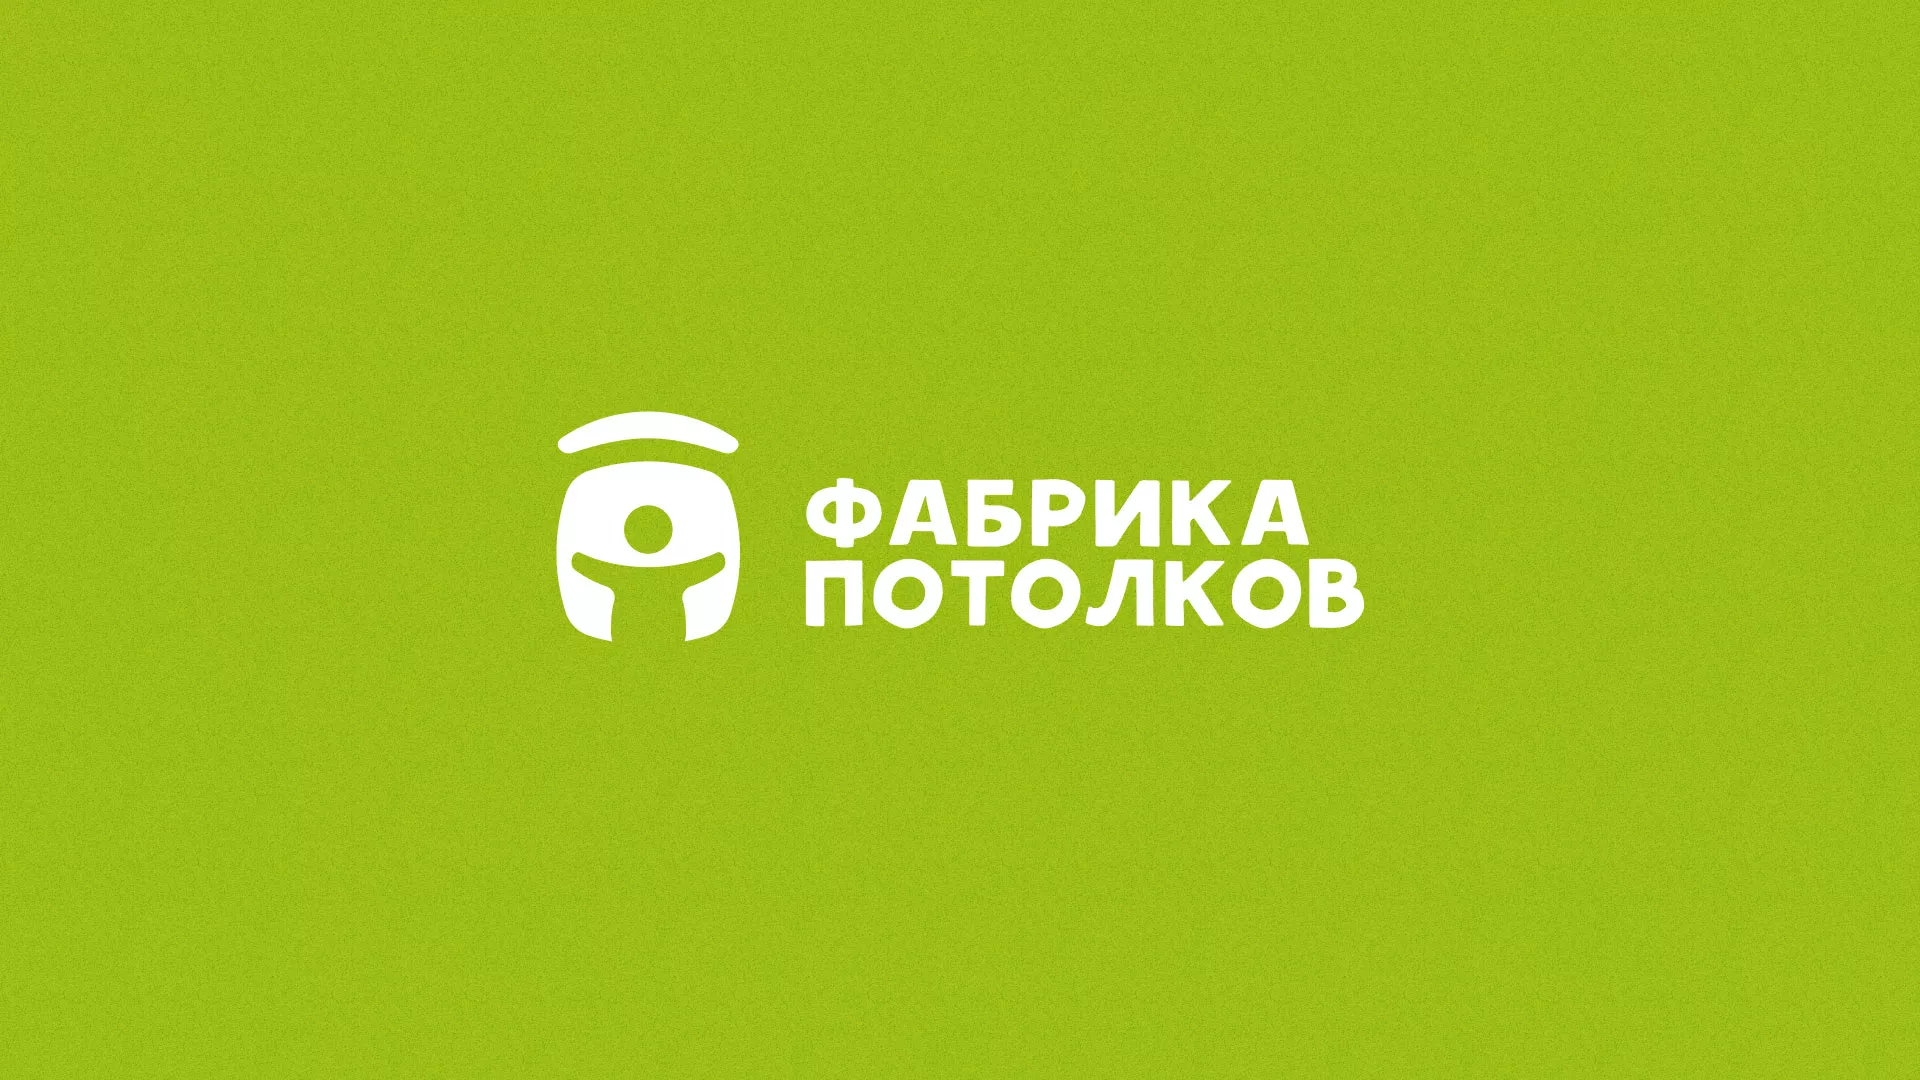 Разработка логотипа для производства натяжных потолков в Бугуруслане